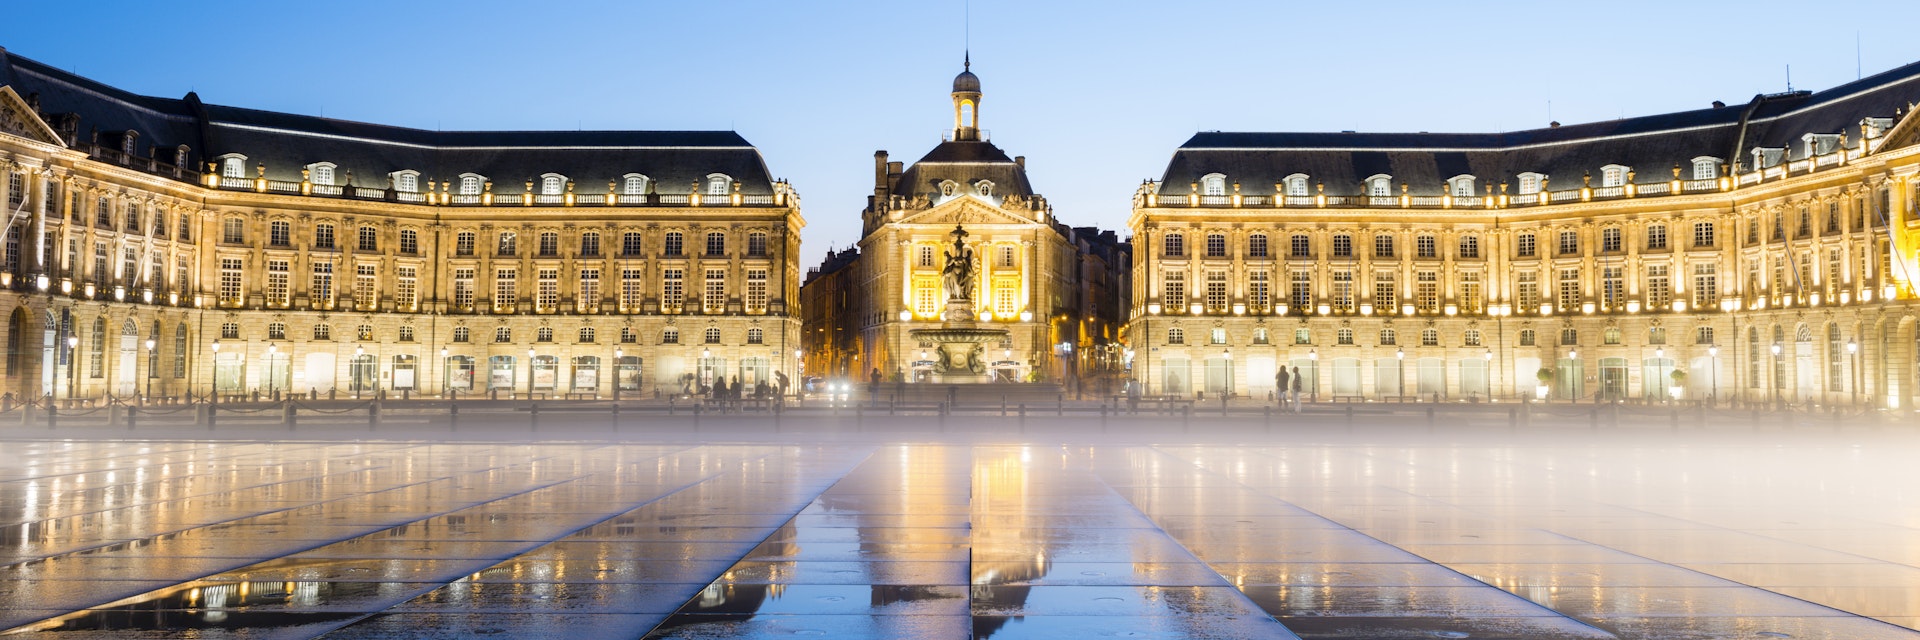 Place de la Bourse in Bordeaux.